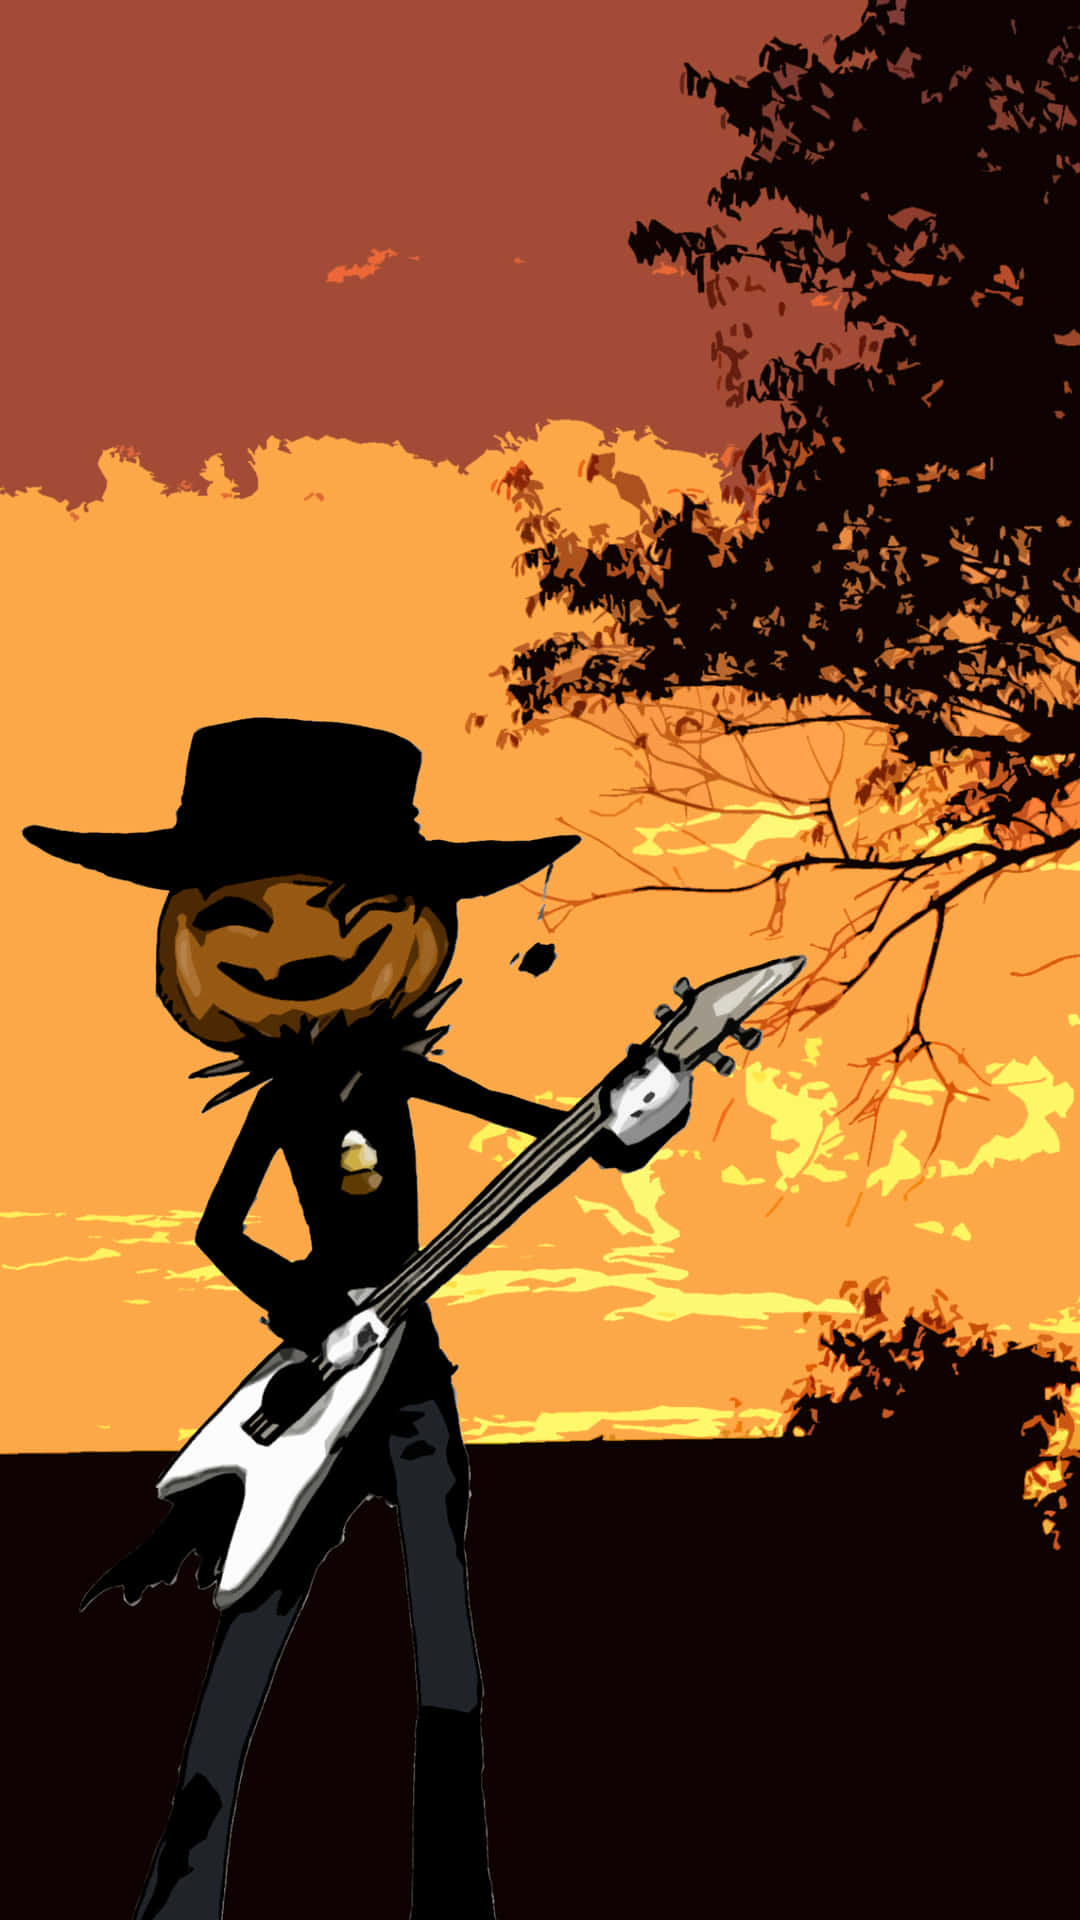 Pumpkin Head Guitarist Sunset Silhouette Wallpaper